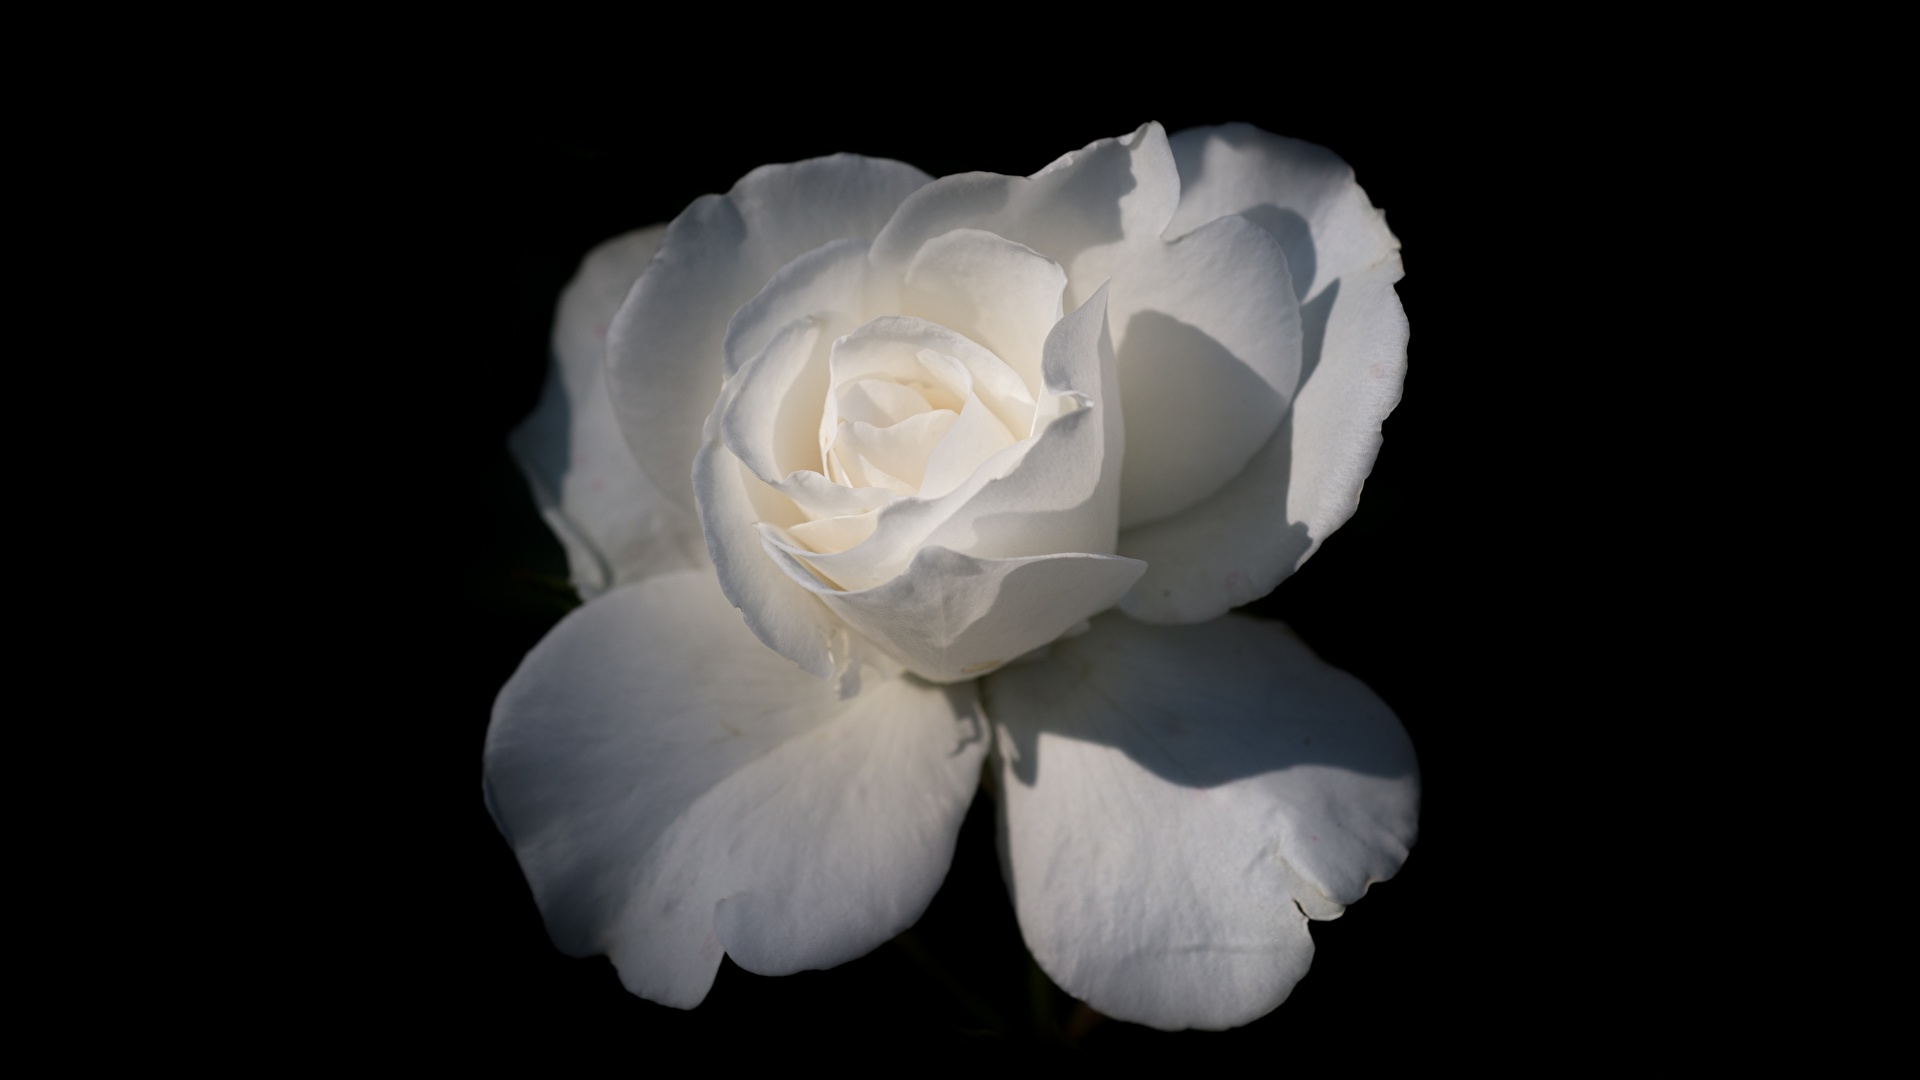 Картинка Розы белая цветок вблизи Черный фон 1920x1080 роза Белый белые белых Цветы на черном фоне Крупным планом